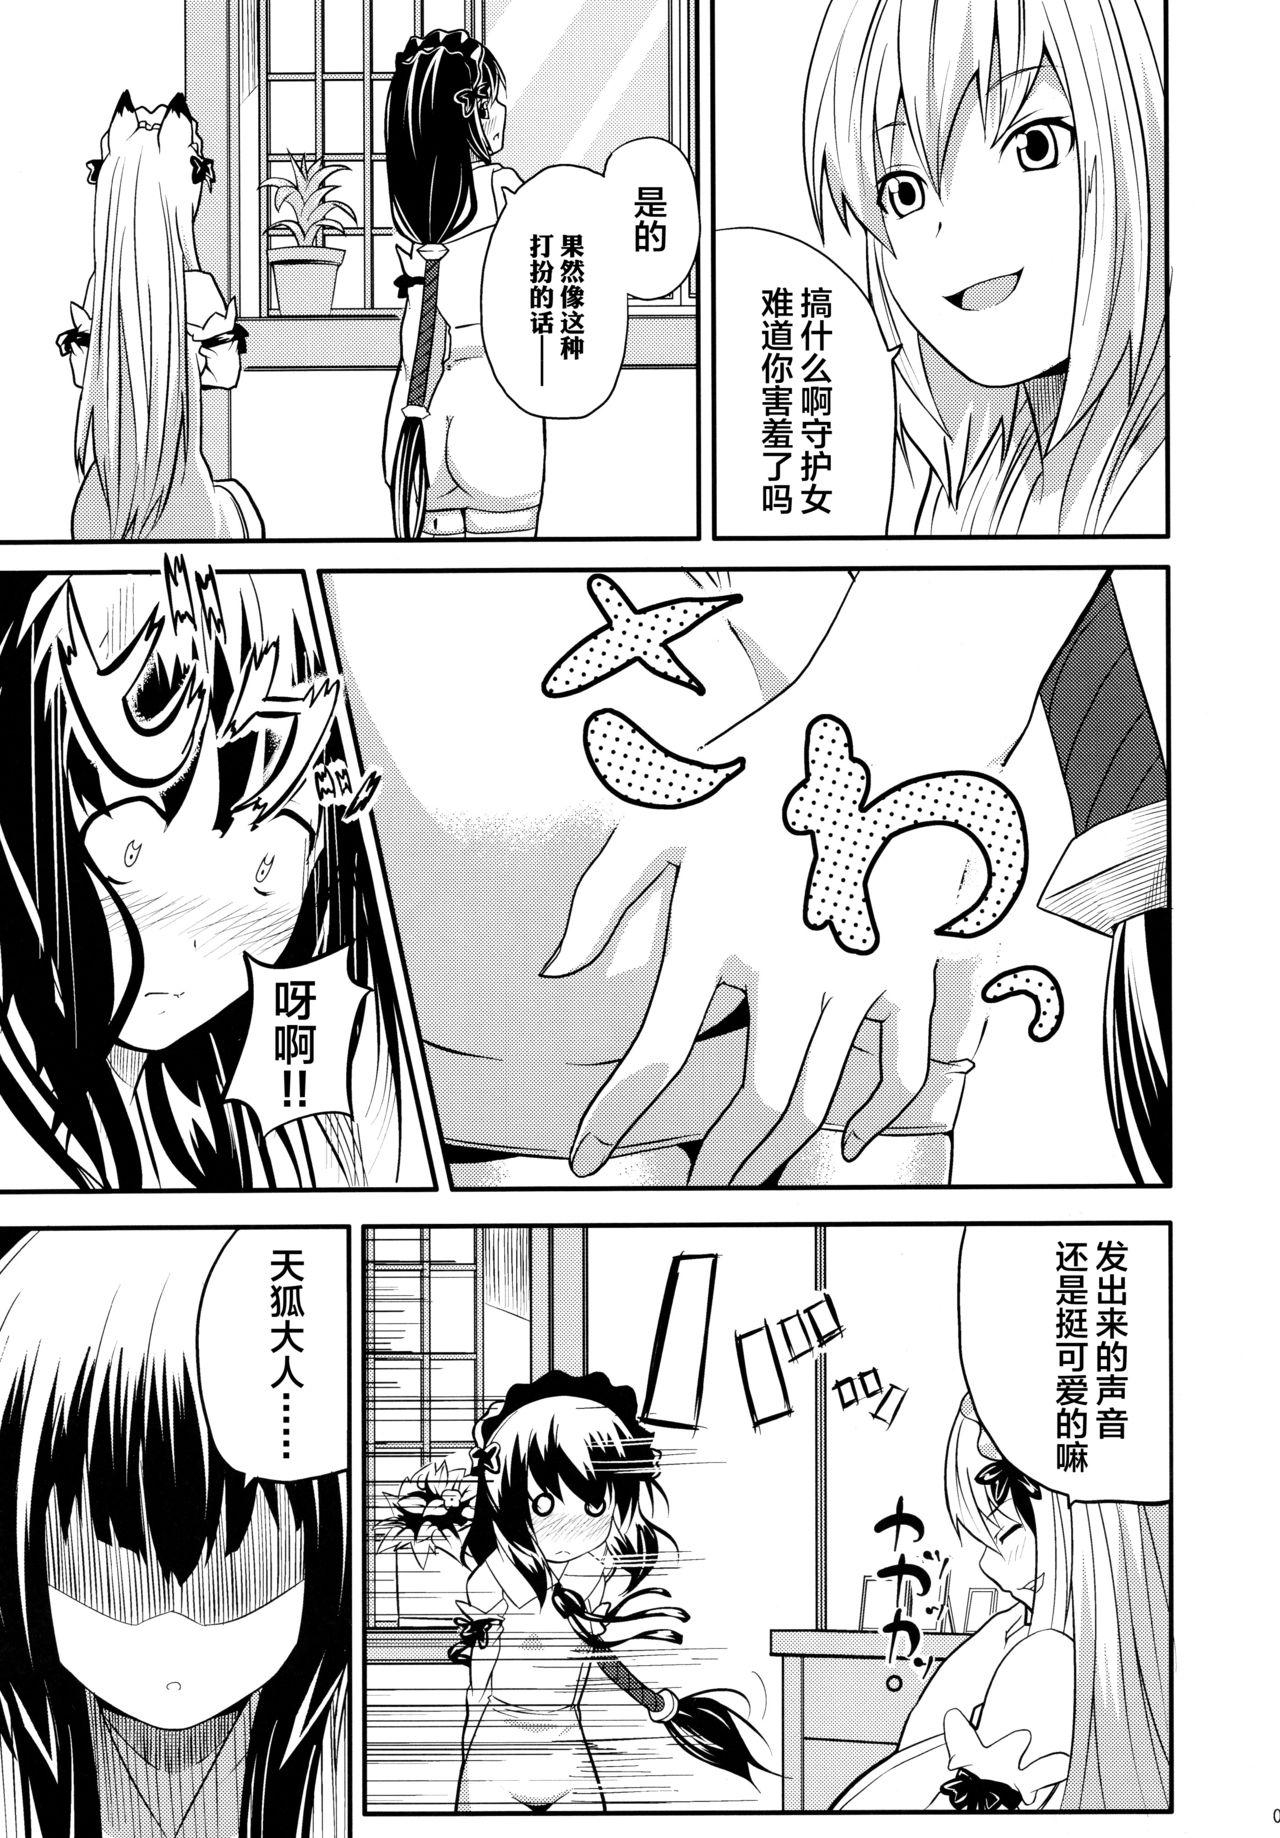 Jacking Off Hare, Tokidoki Oinari-sama 4 - Wagaya no oinari sama Free Fuck - Page 7